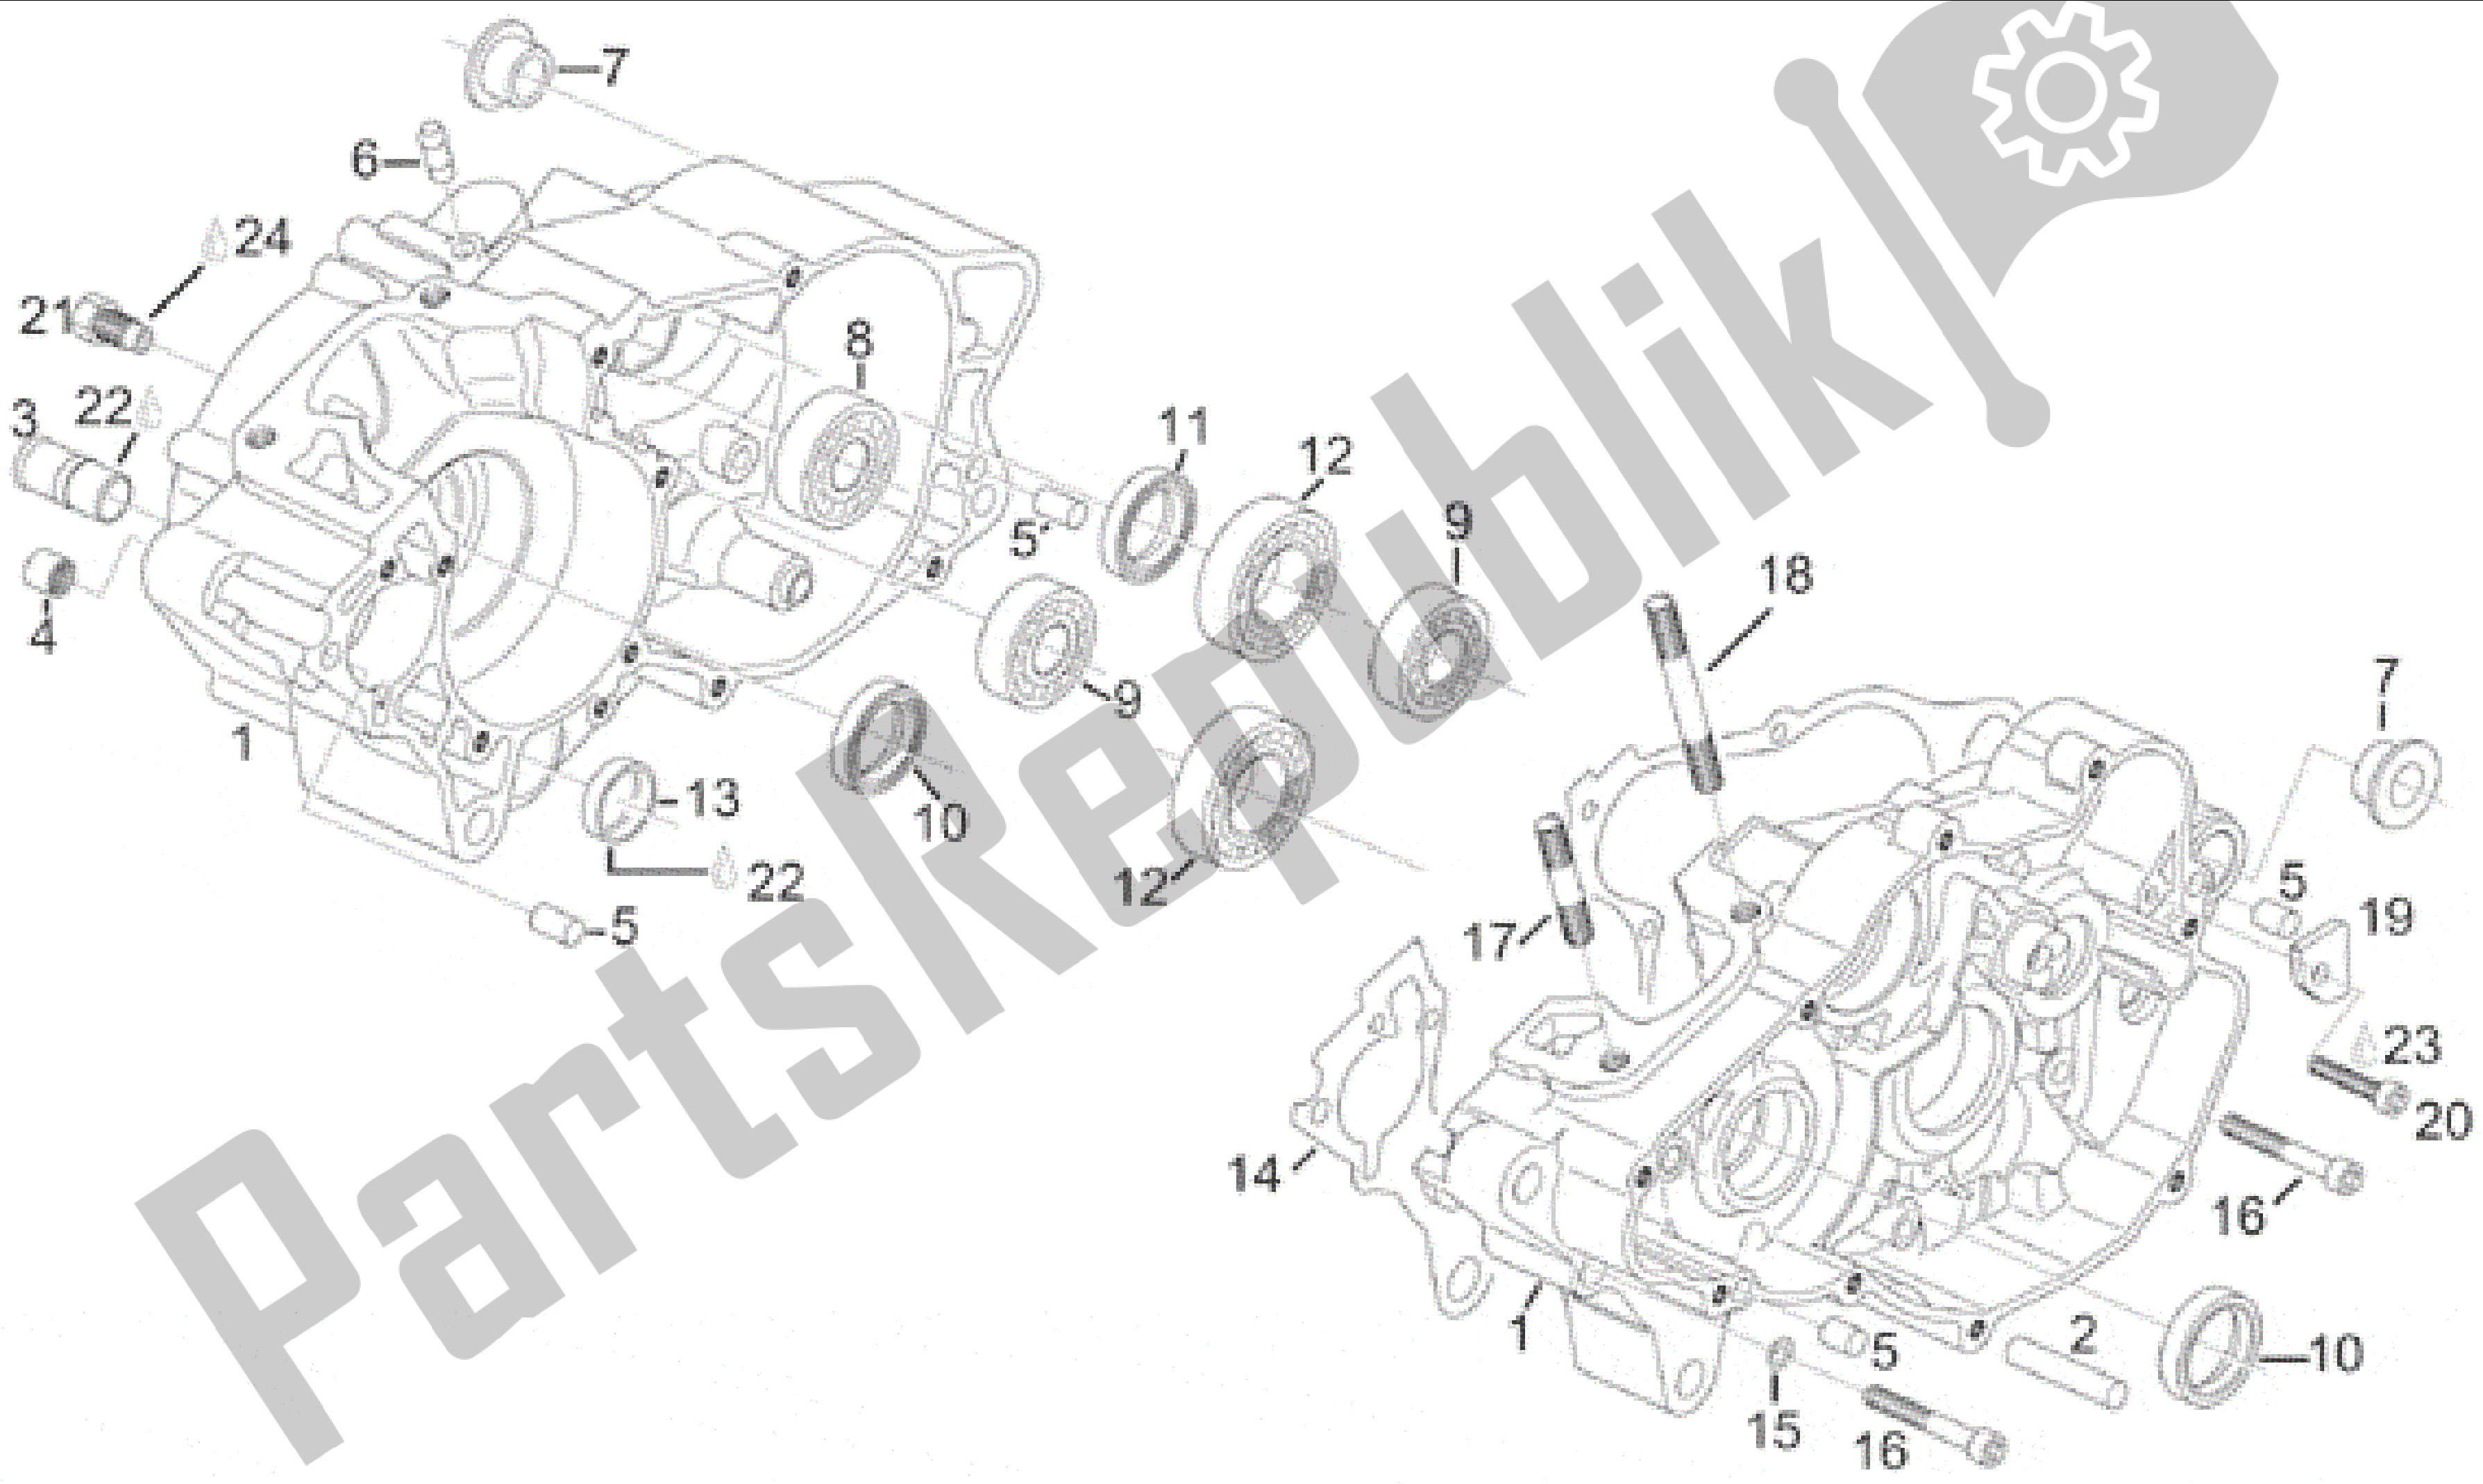 All parts for the Crankcase of the Aprilia RX 125 1995 - 1998